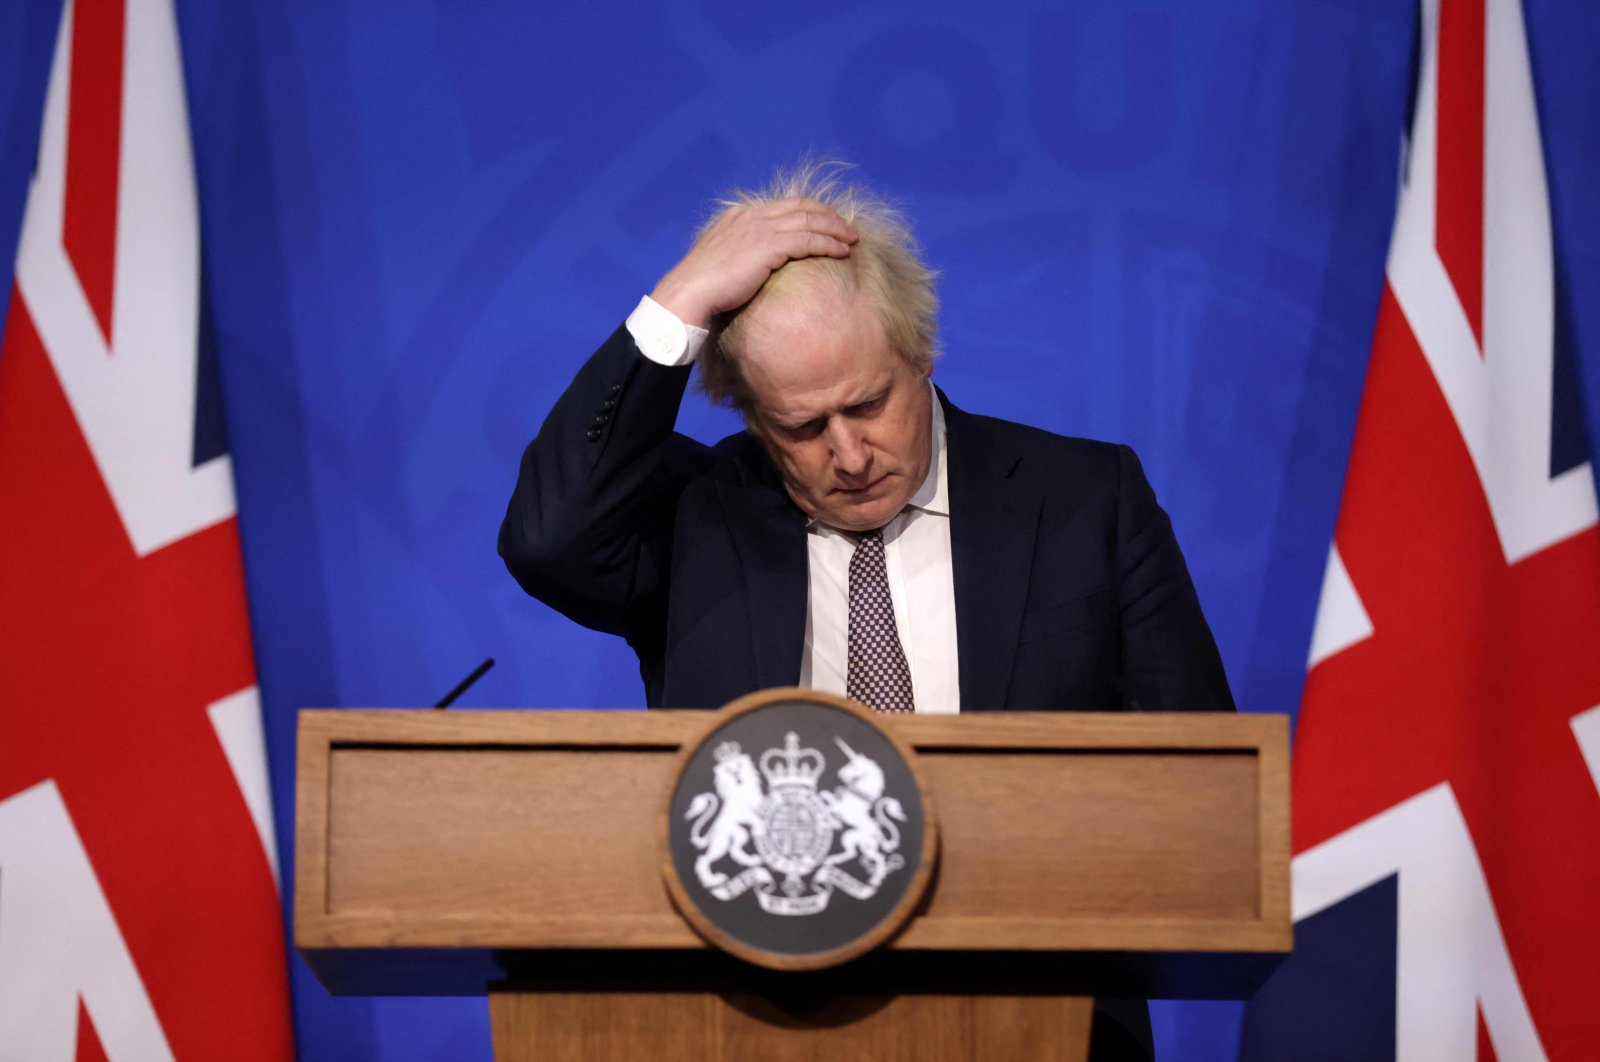 Mantan PM Inggris Johnson mengundurkan diri sebagai anggota parlemen dari Parlemen